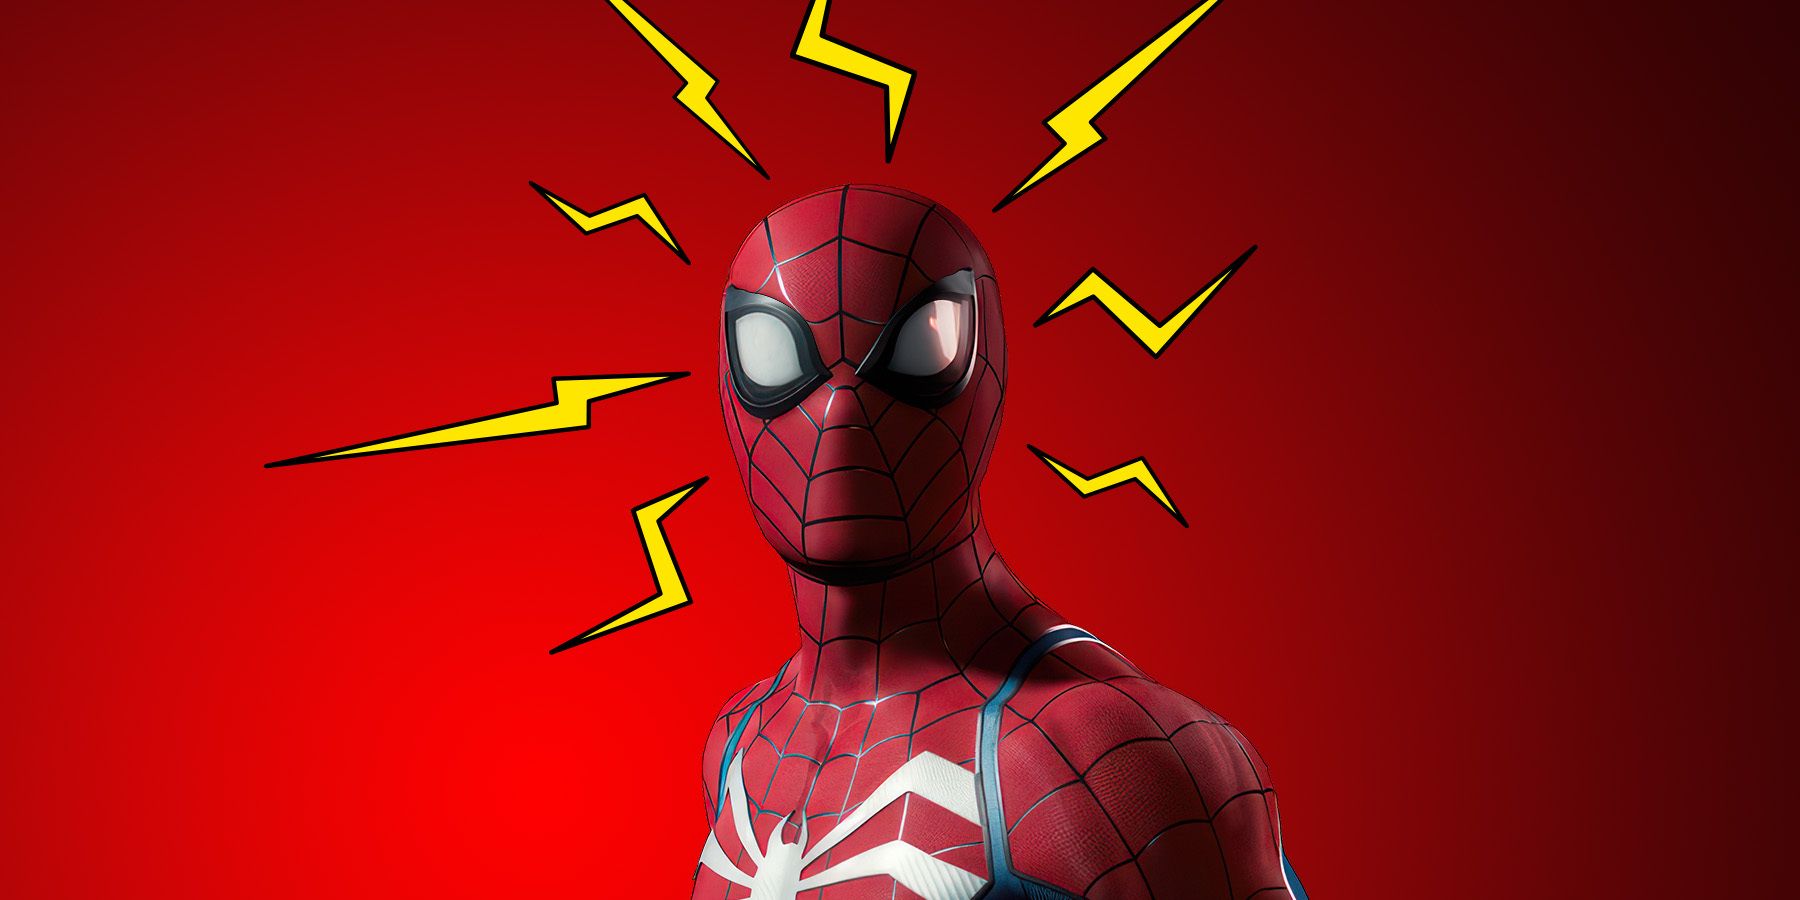 spider-man with spidey sense